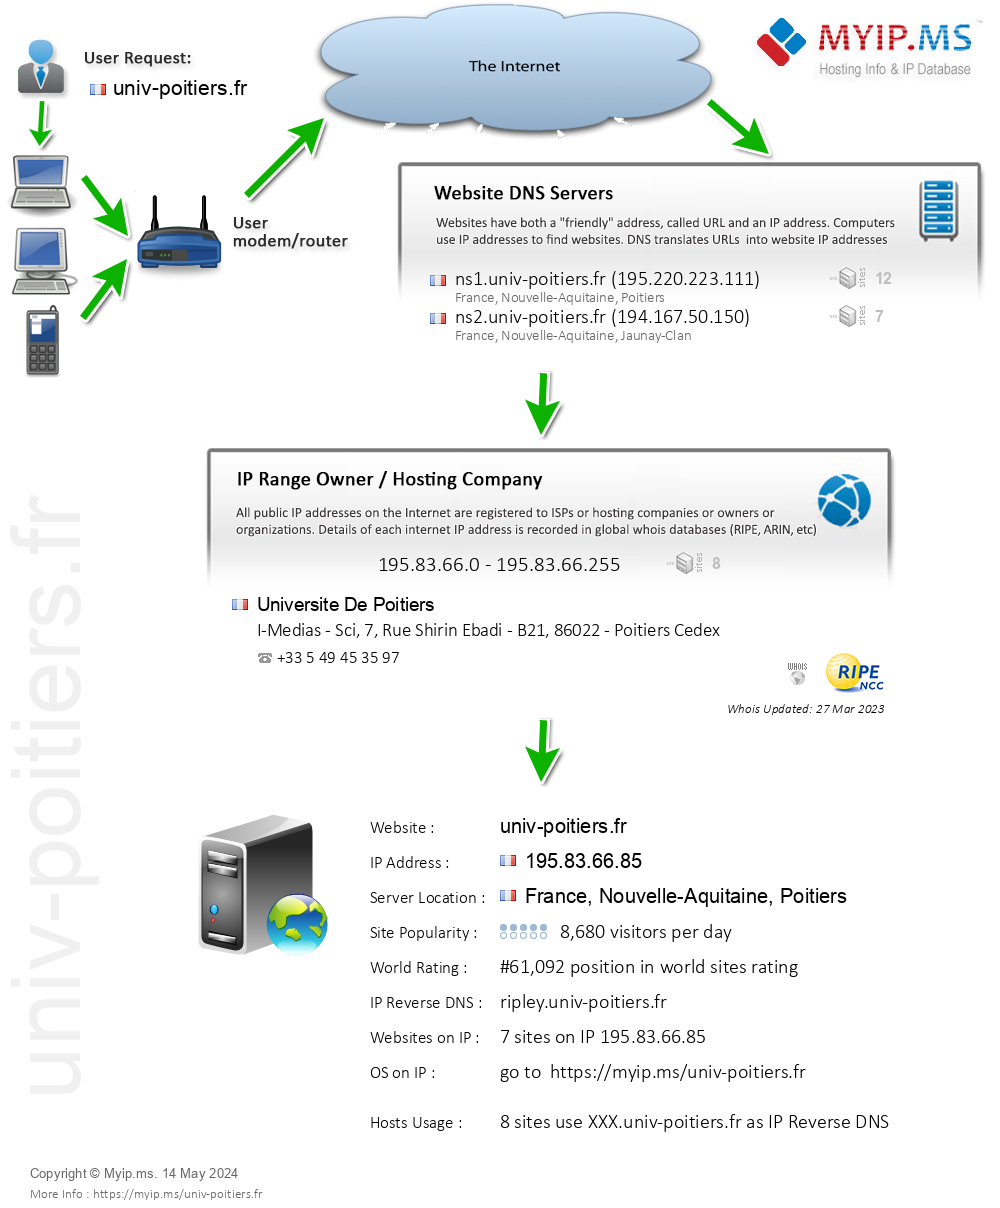 Univ-poitiers.fr - Website Hosting Visual IP Diagram